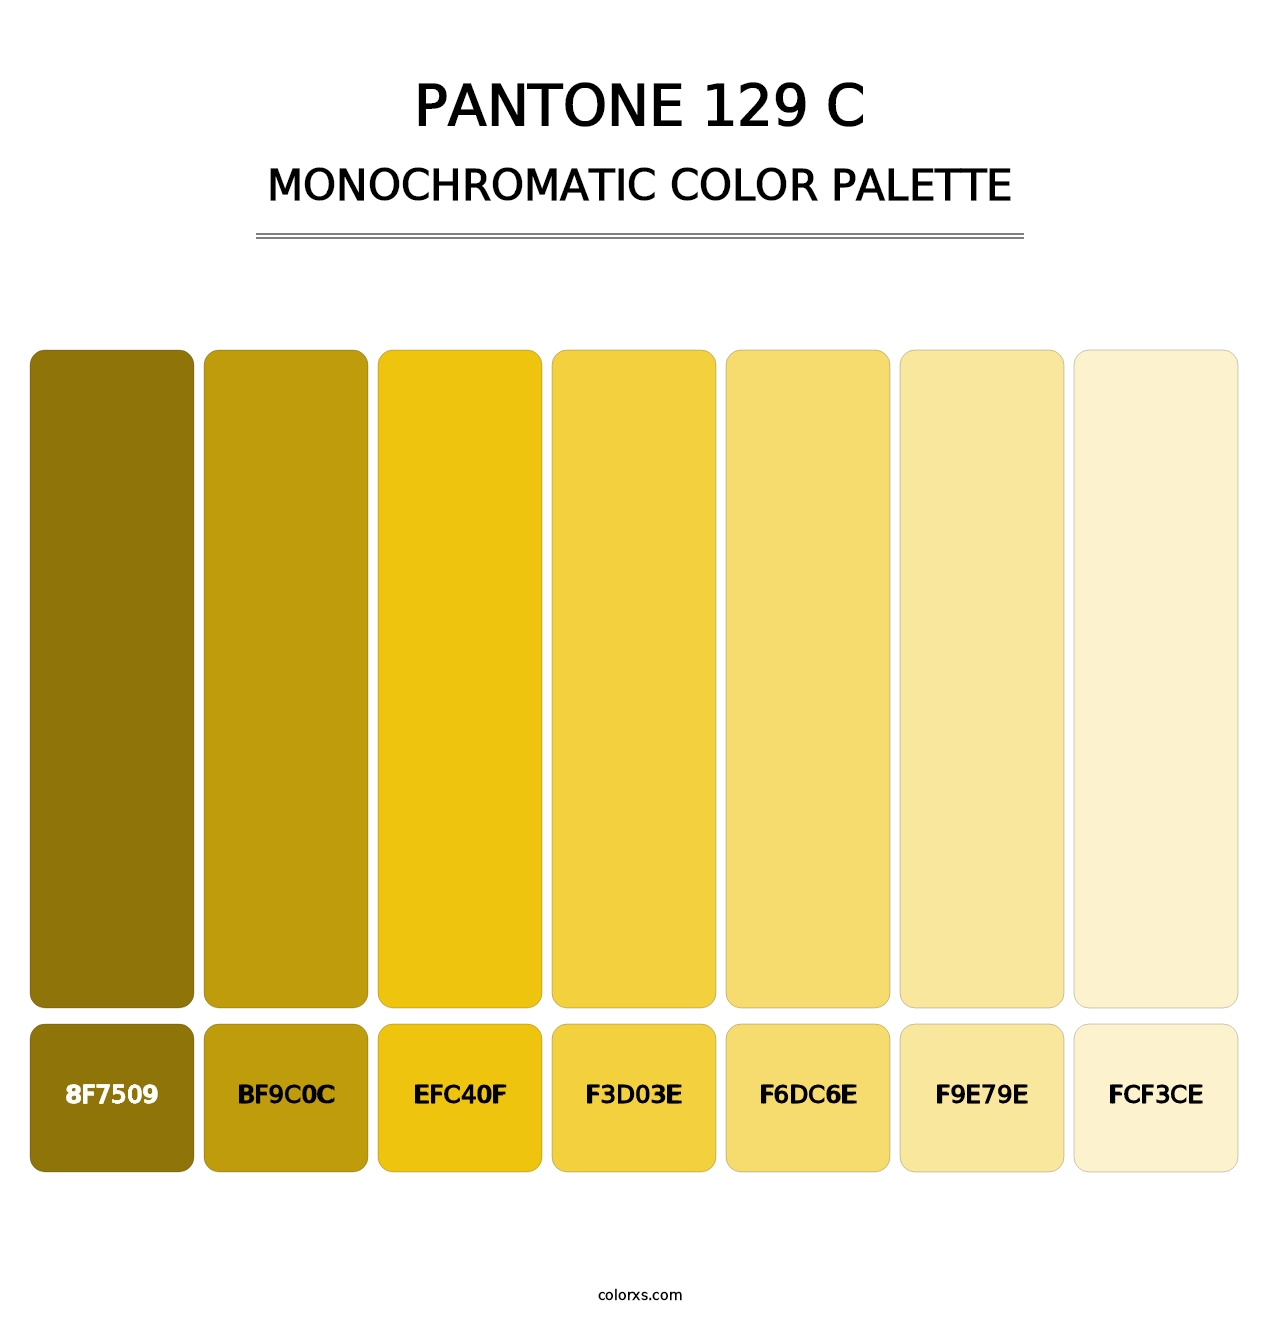 PANTONE 129 C - Monochromatic Color Palette